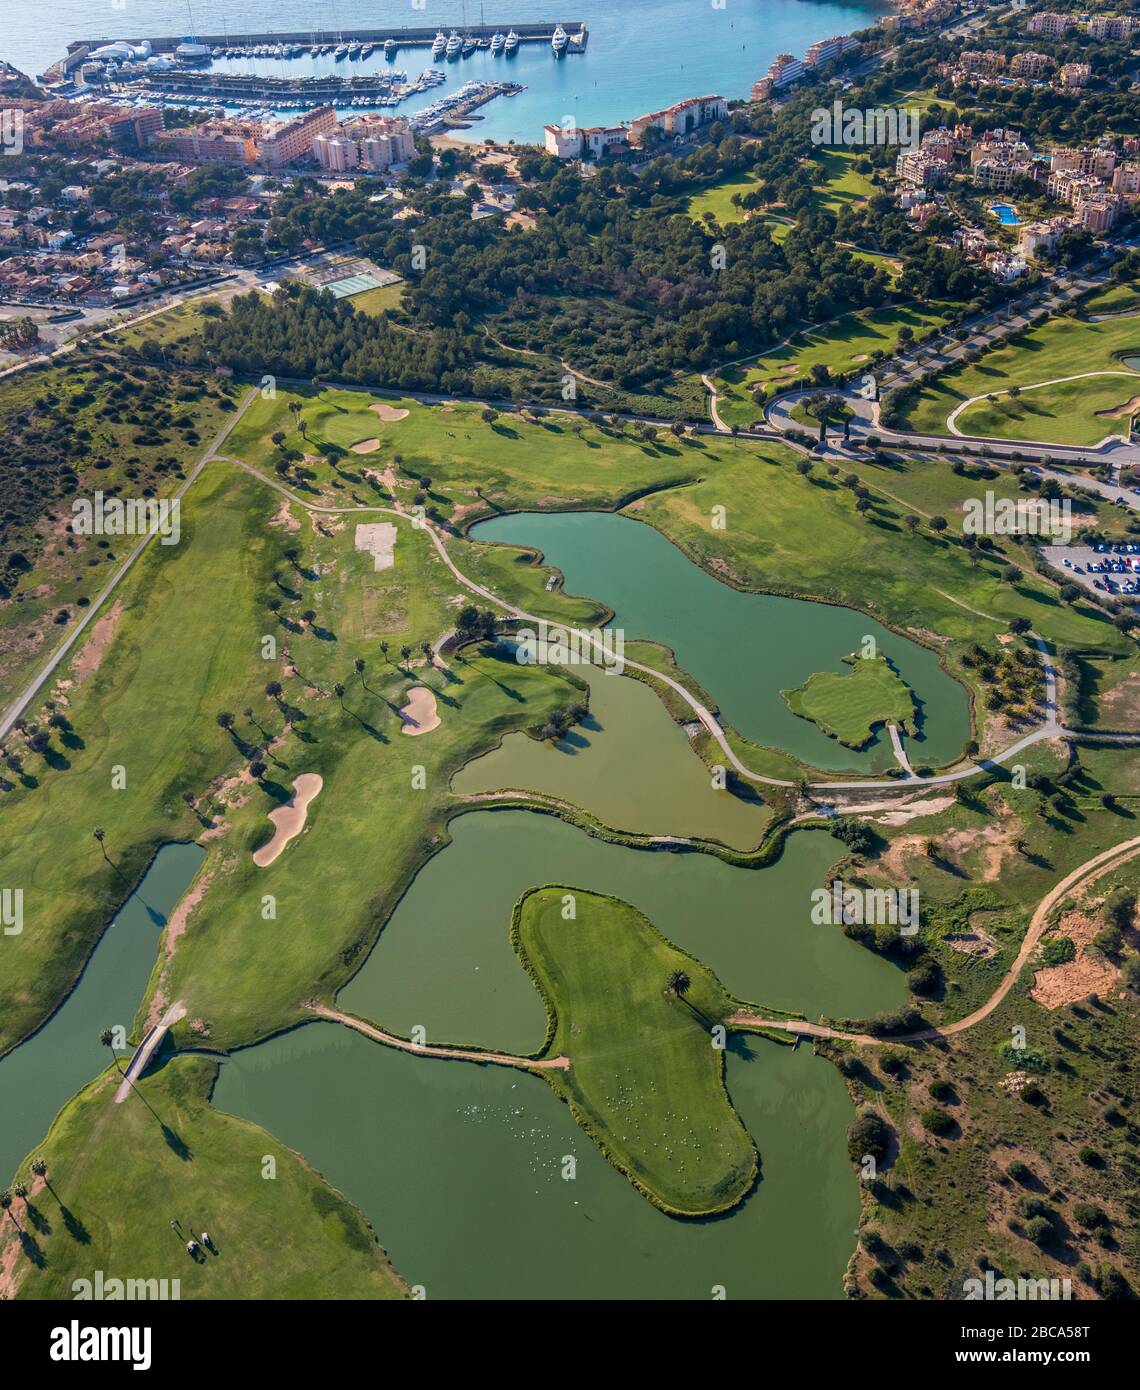 Vista aérea, campo de golf Santa Ponsa II, Port Adriano, Calvià, Mallorca, España, Europa, Islas Baleares Foto de stock